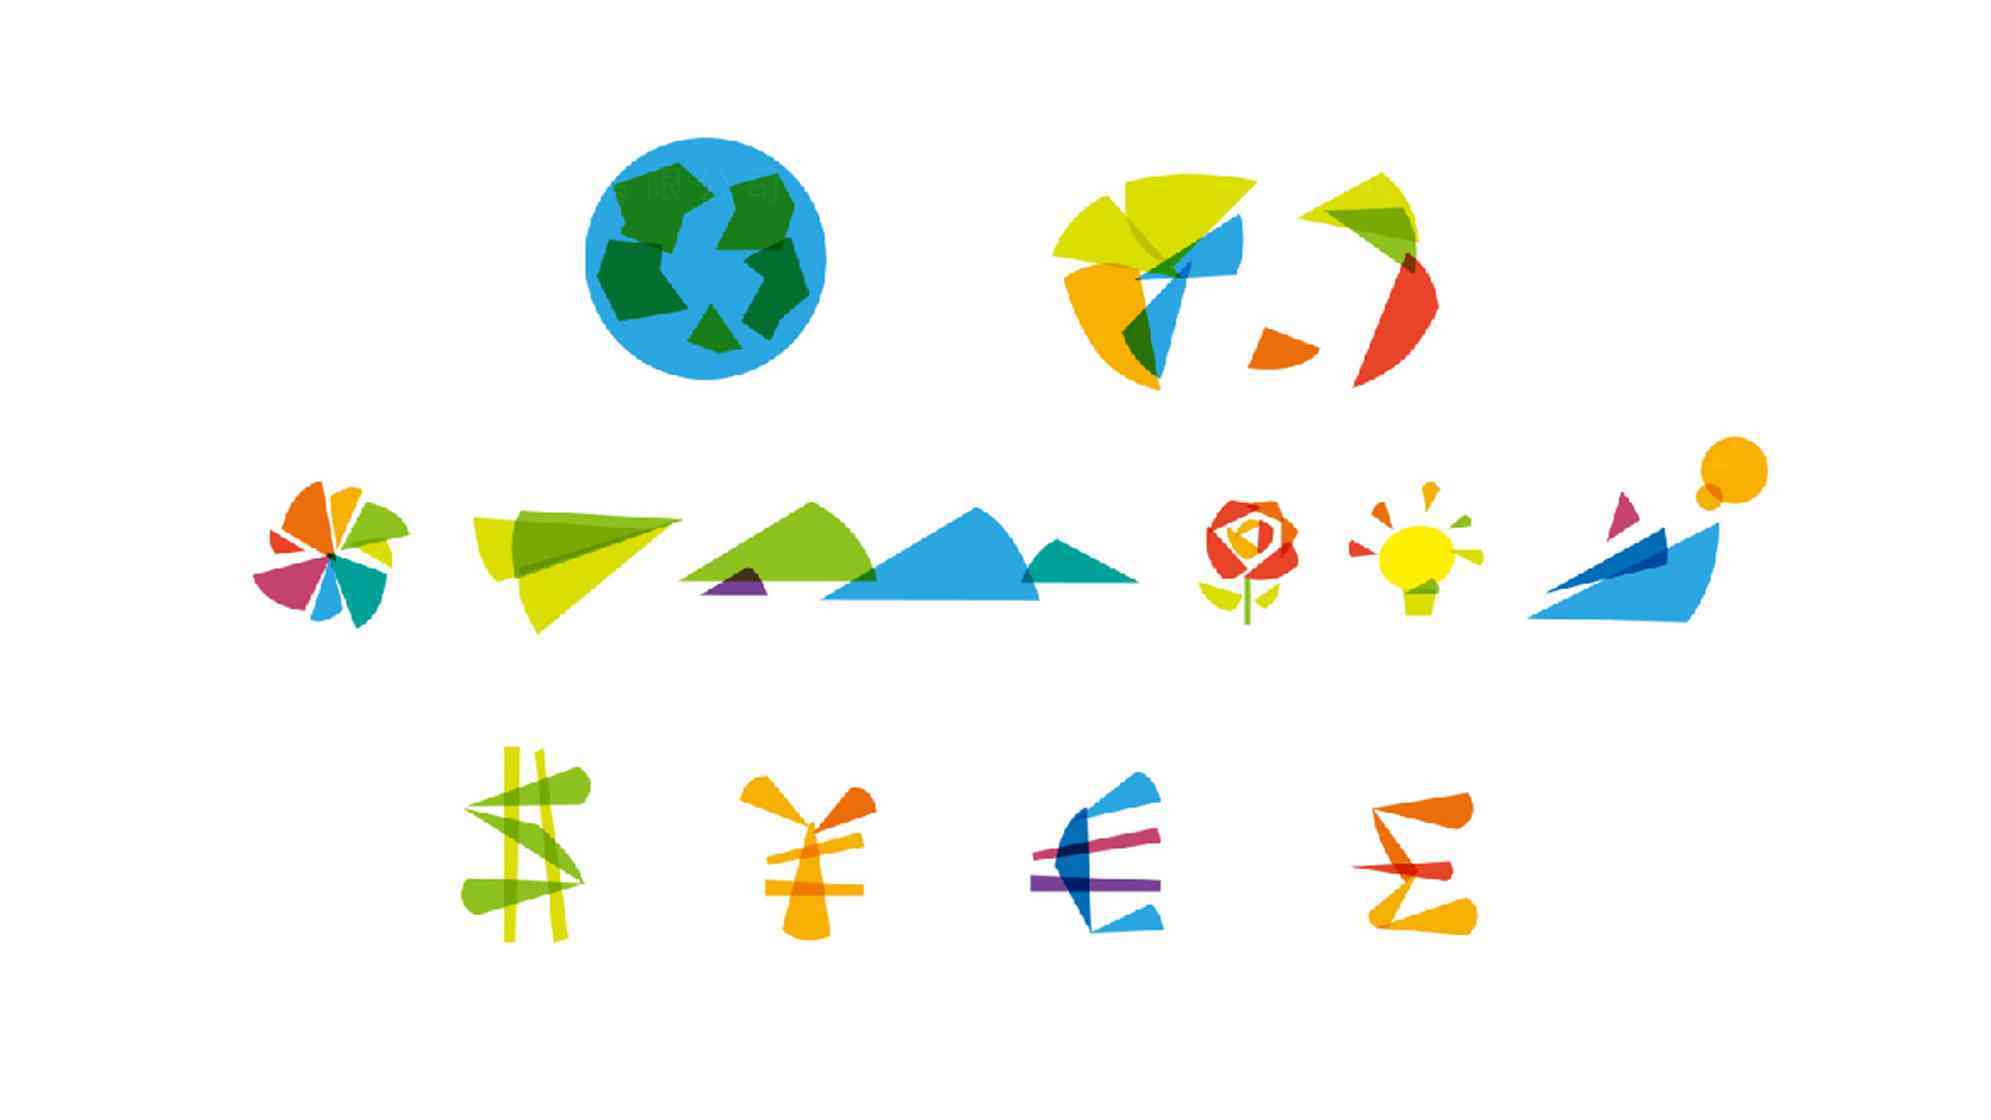 青年APEC會議logo設計圖片素材